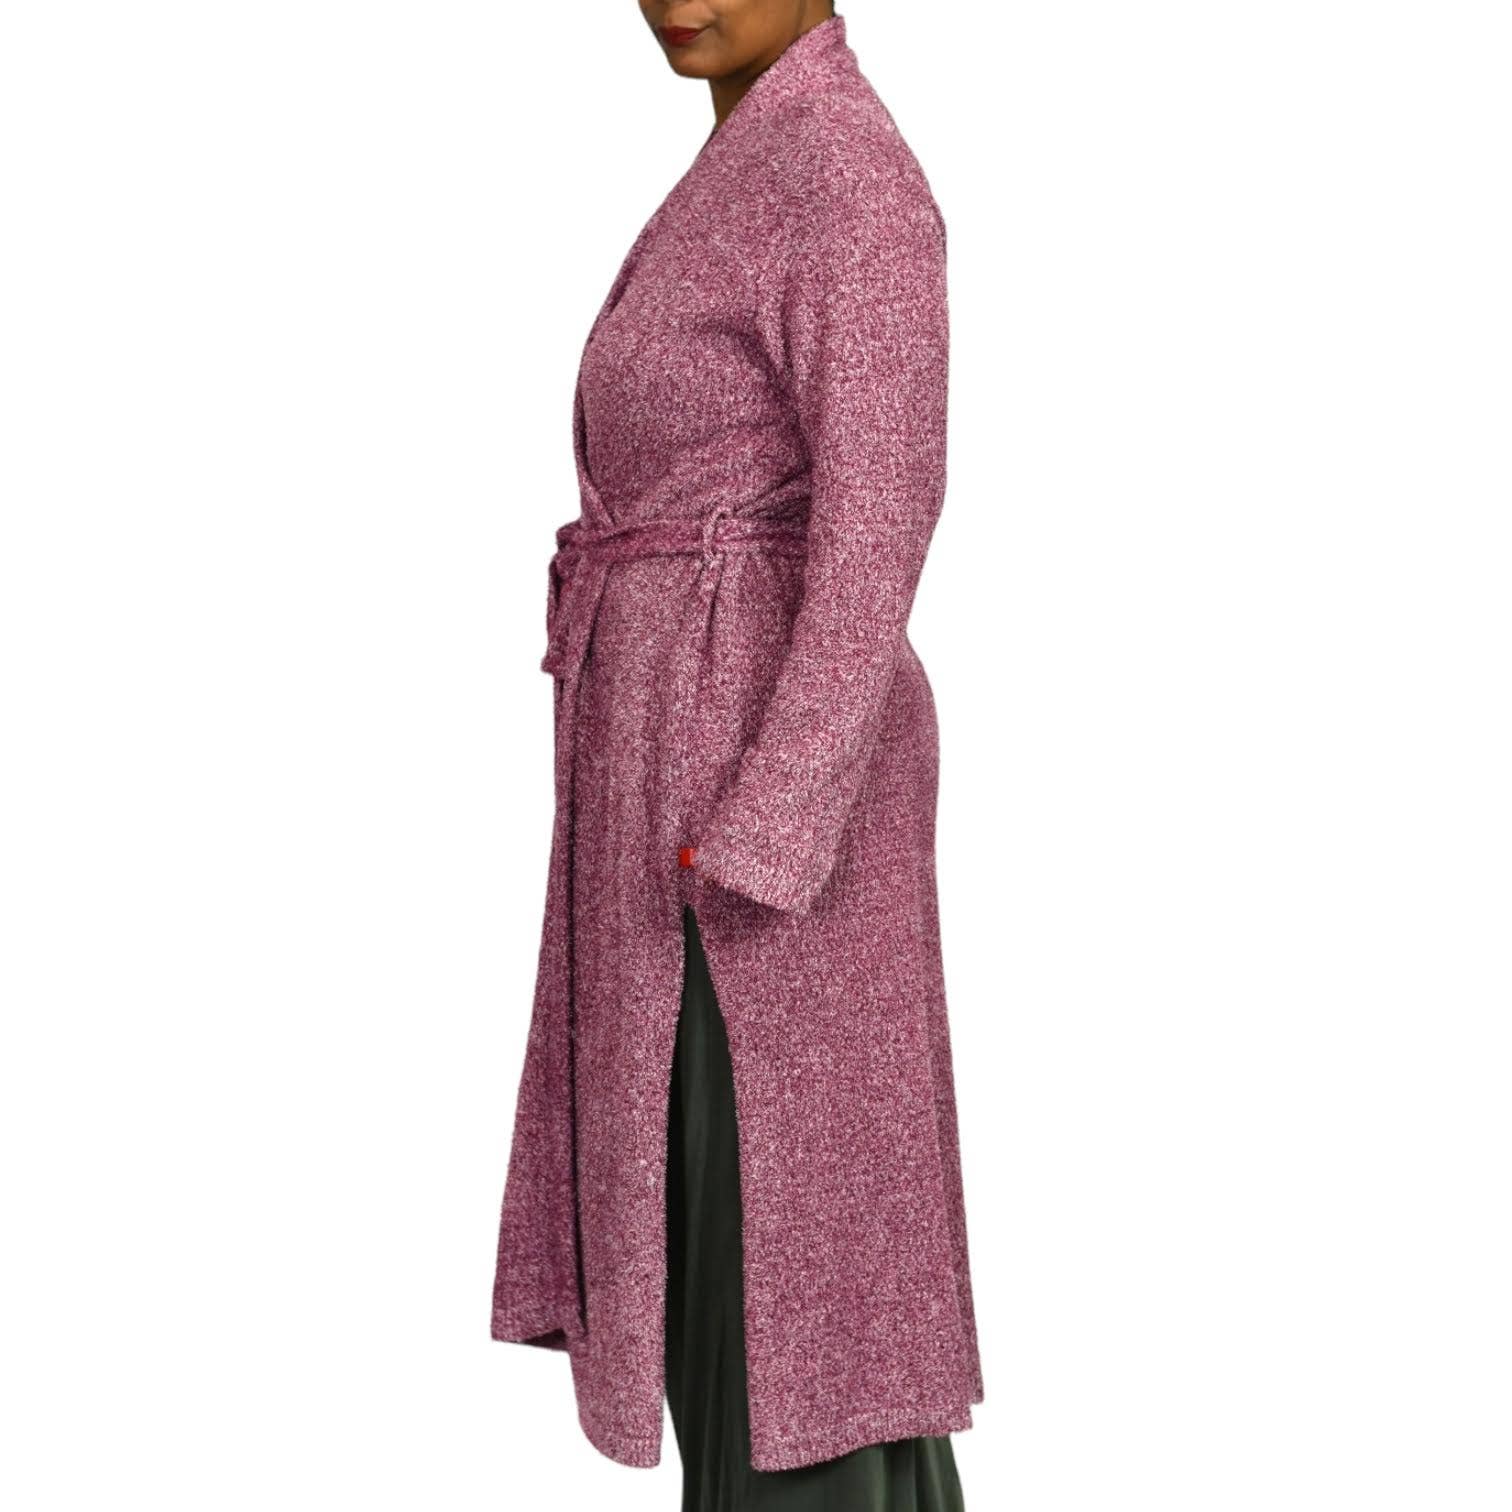 Josie Natori Sweater Weather Wrap Long Cardigan Robe Soft Fuzzy Teddy Size Large